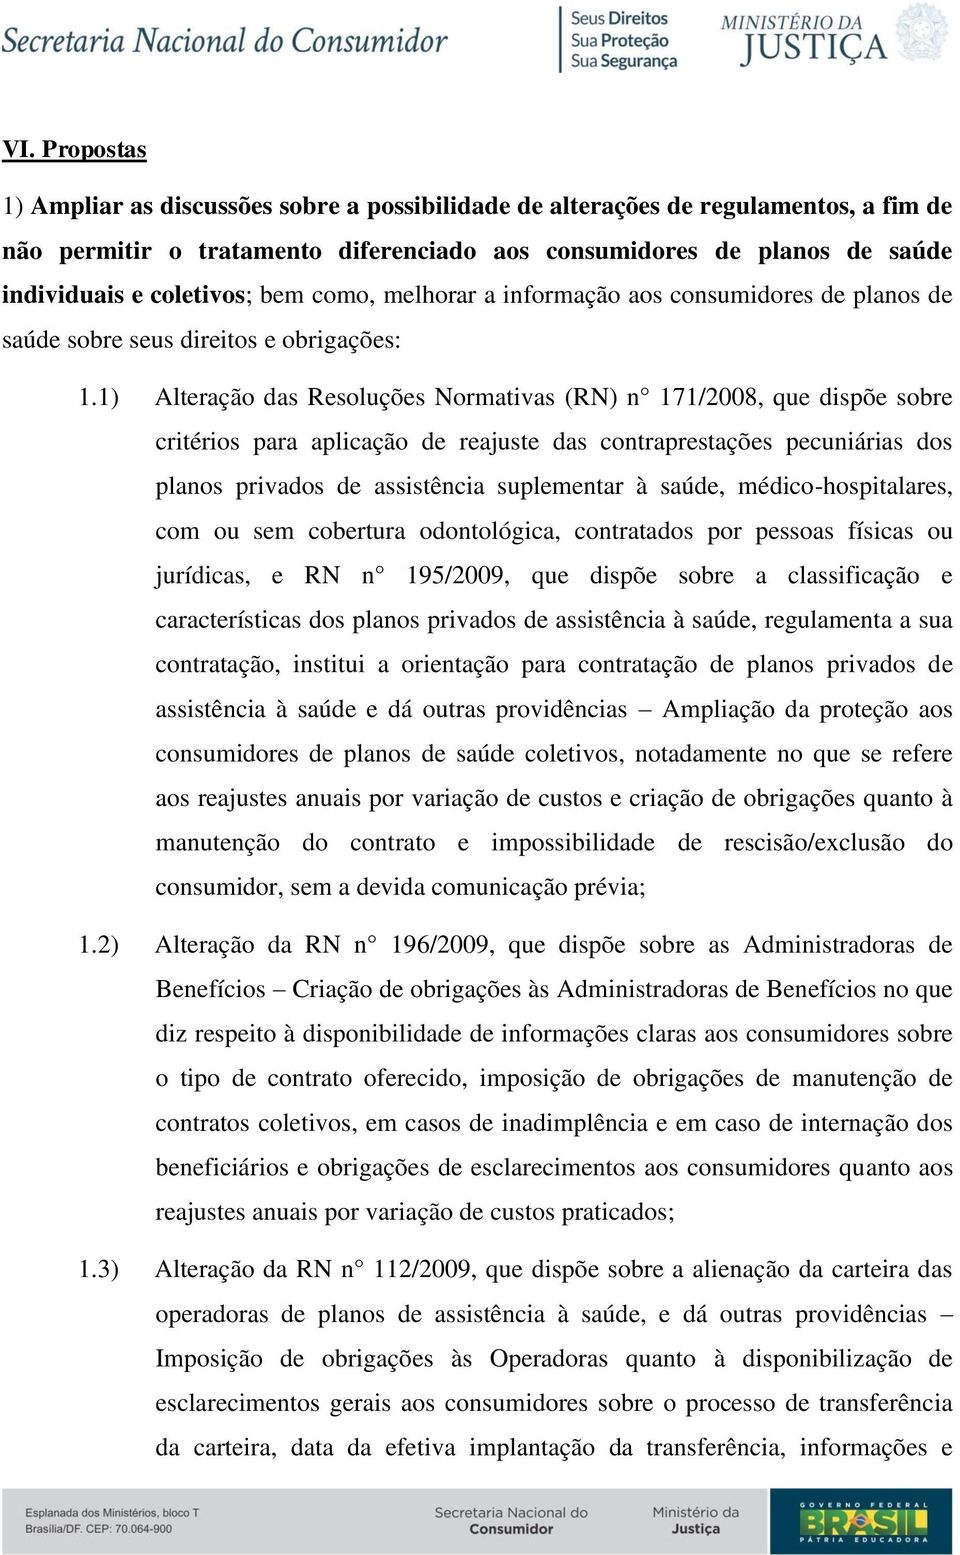 1) Alteração das Resoluções Normativas (RN) n 171/2008, que dispõe sobre critérios para aplicação de reajuste das contraprestações pecuniárias dos planos privados de assistência suplementar à saúde,